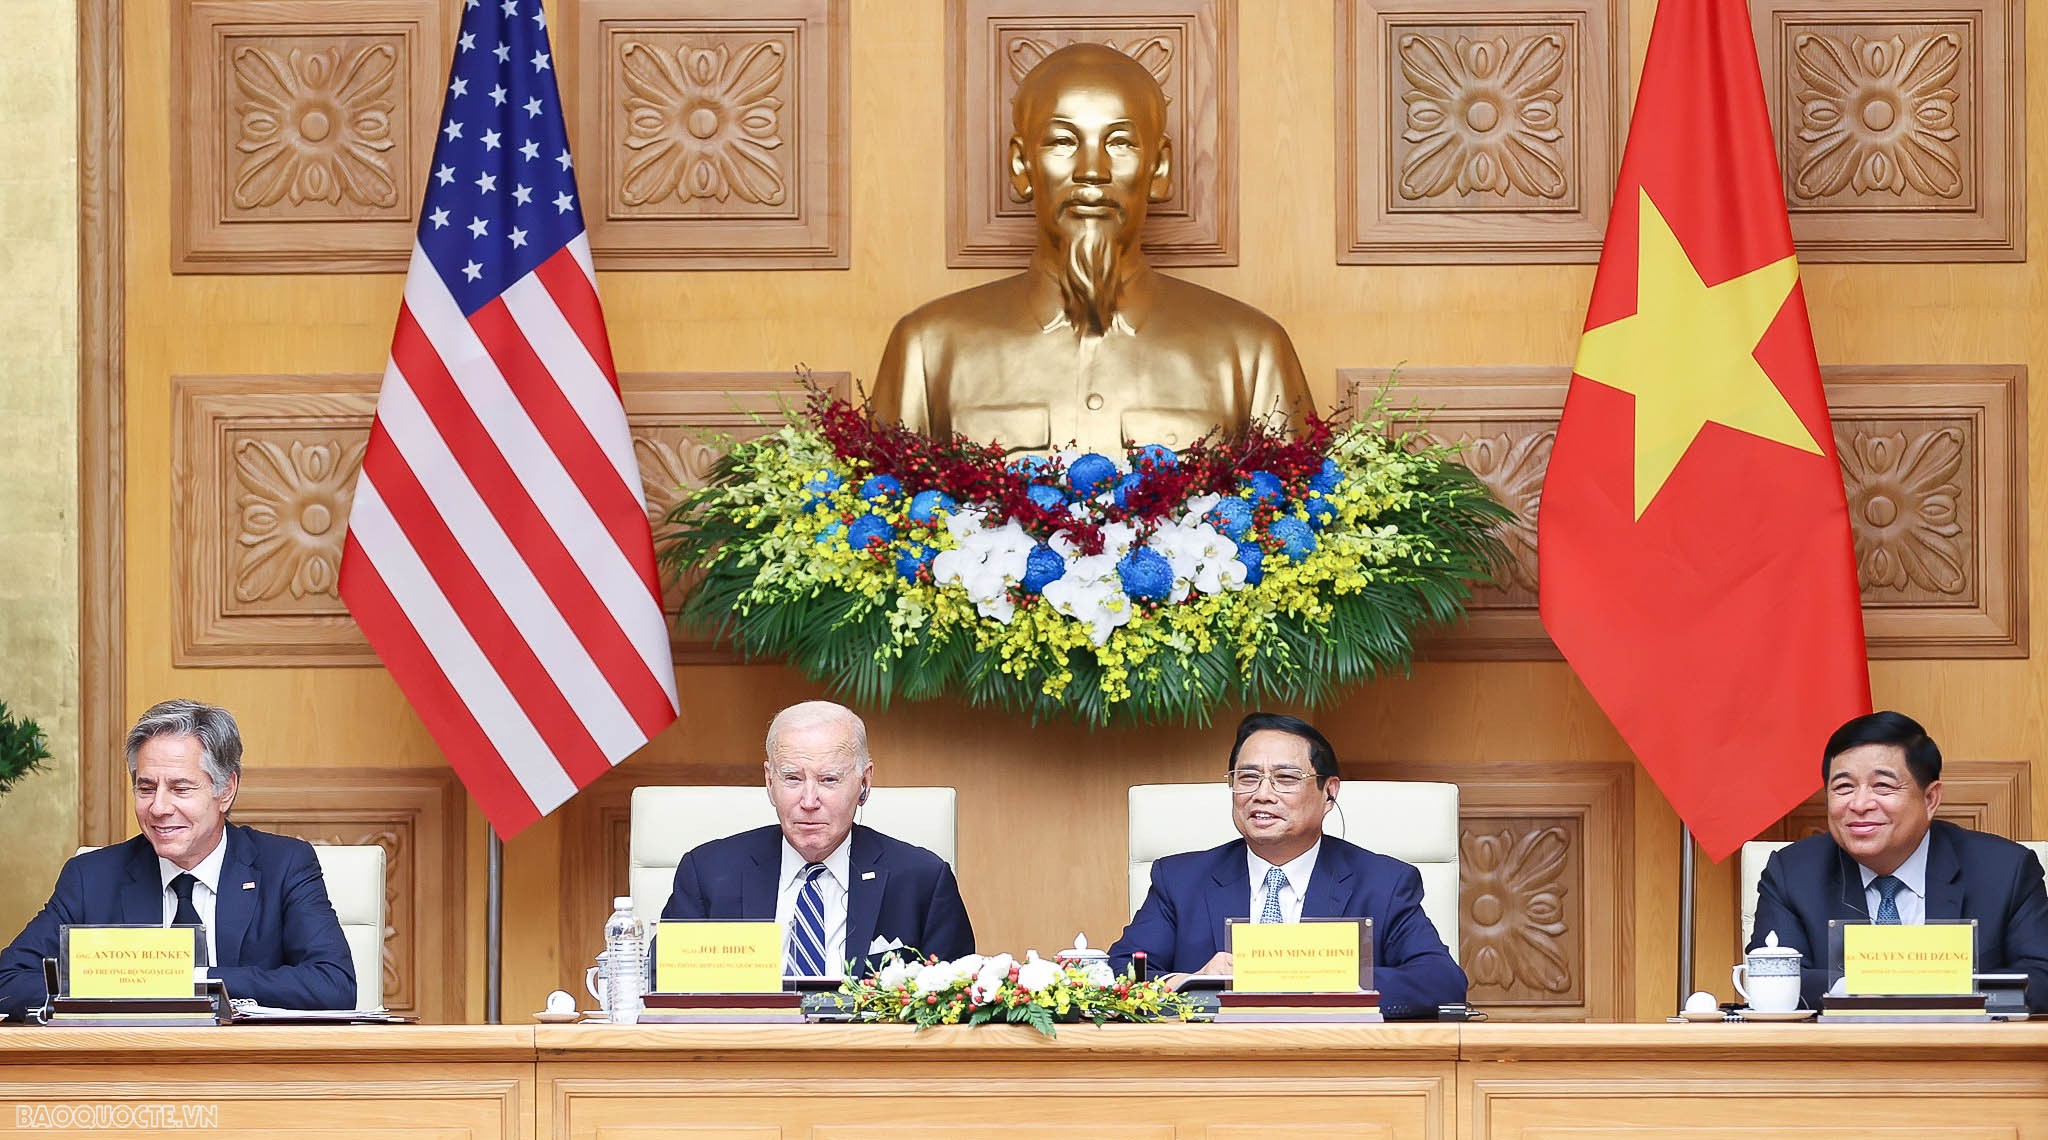 Sau đó, Thủ tướng Chính phủ Phạm Minh Chính và Tổng thống Joe Biden cùng dự Hội nghị cấp cao Việt Nam-Hoa Kỳ về Đầu tư và Đổi mới sáng tạo.